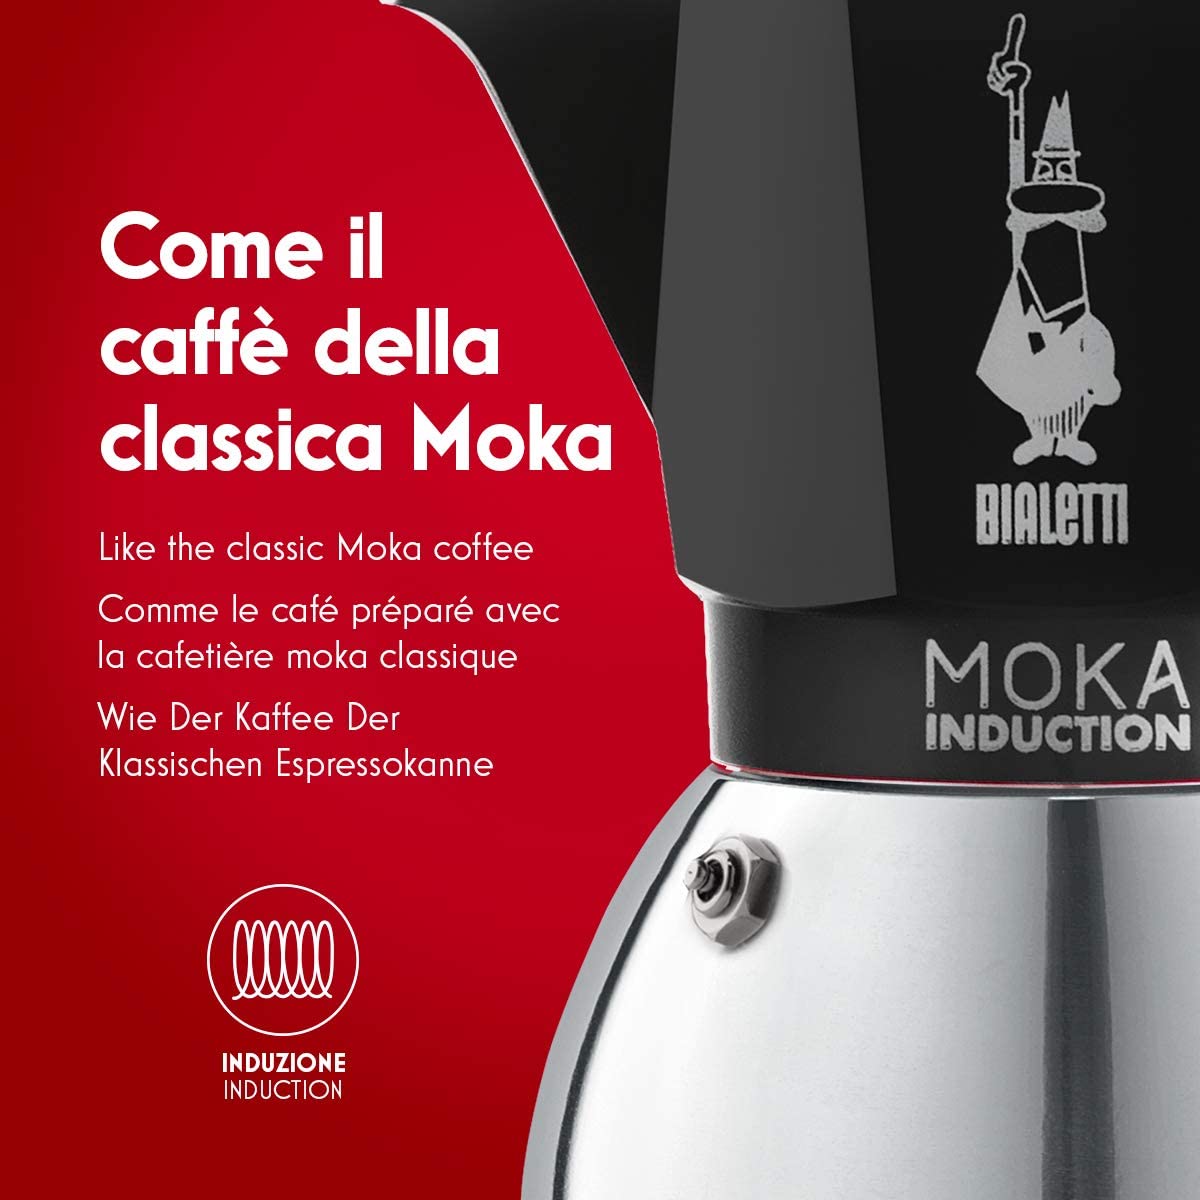 Восьмое дополнительное изображение для товара Гейзерная кофеварка Bialetti Moka Induction 6934NP для индукционных плит (4 порции, 150 мл), черная